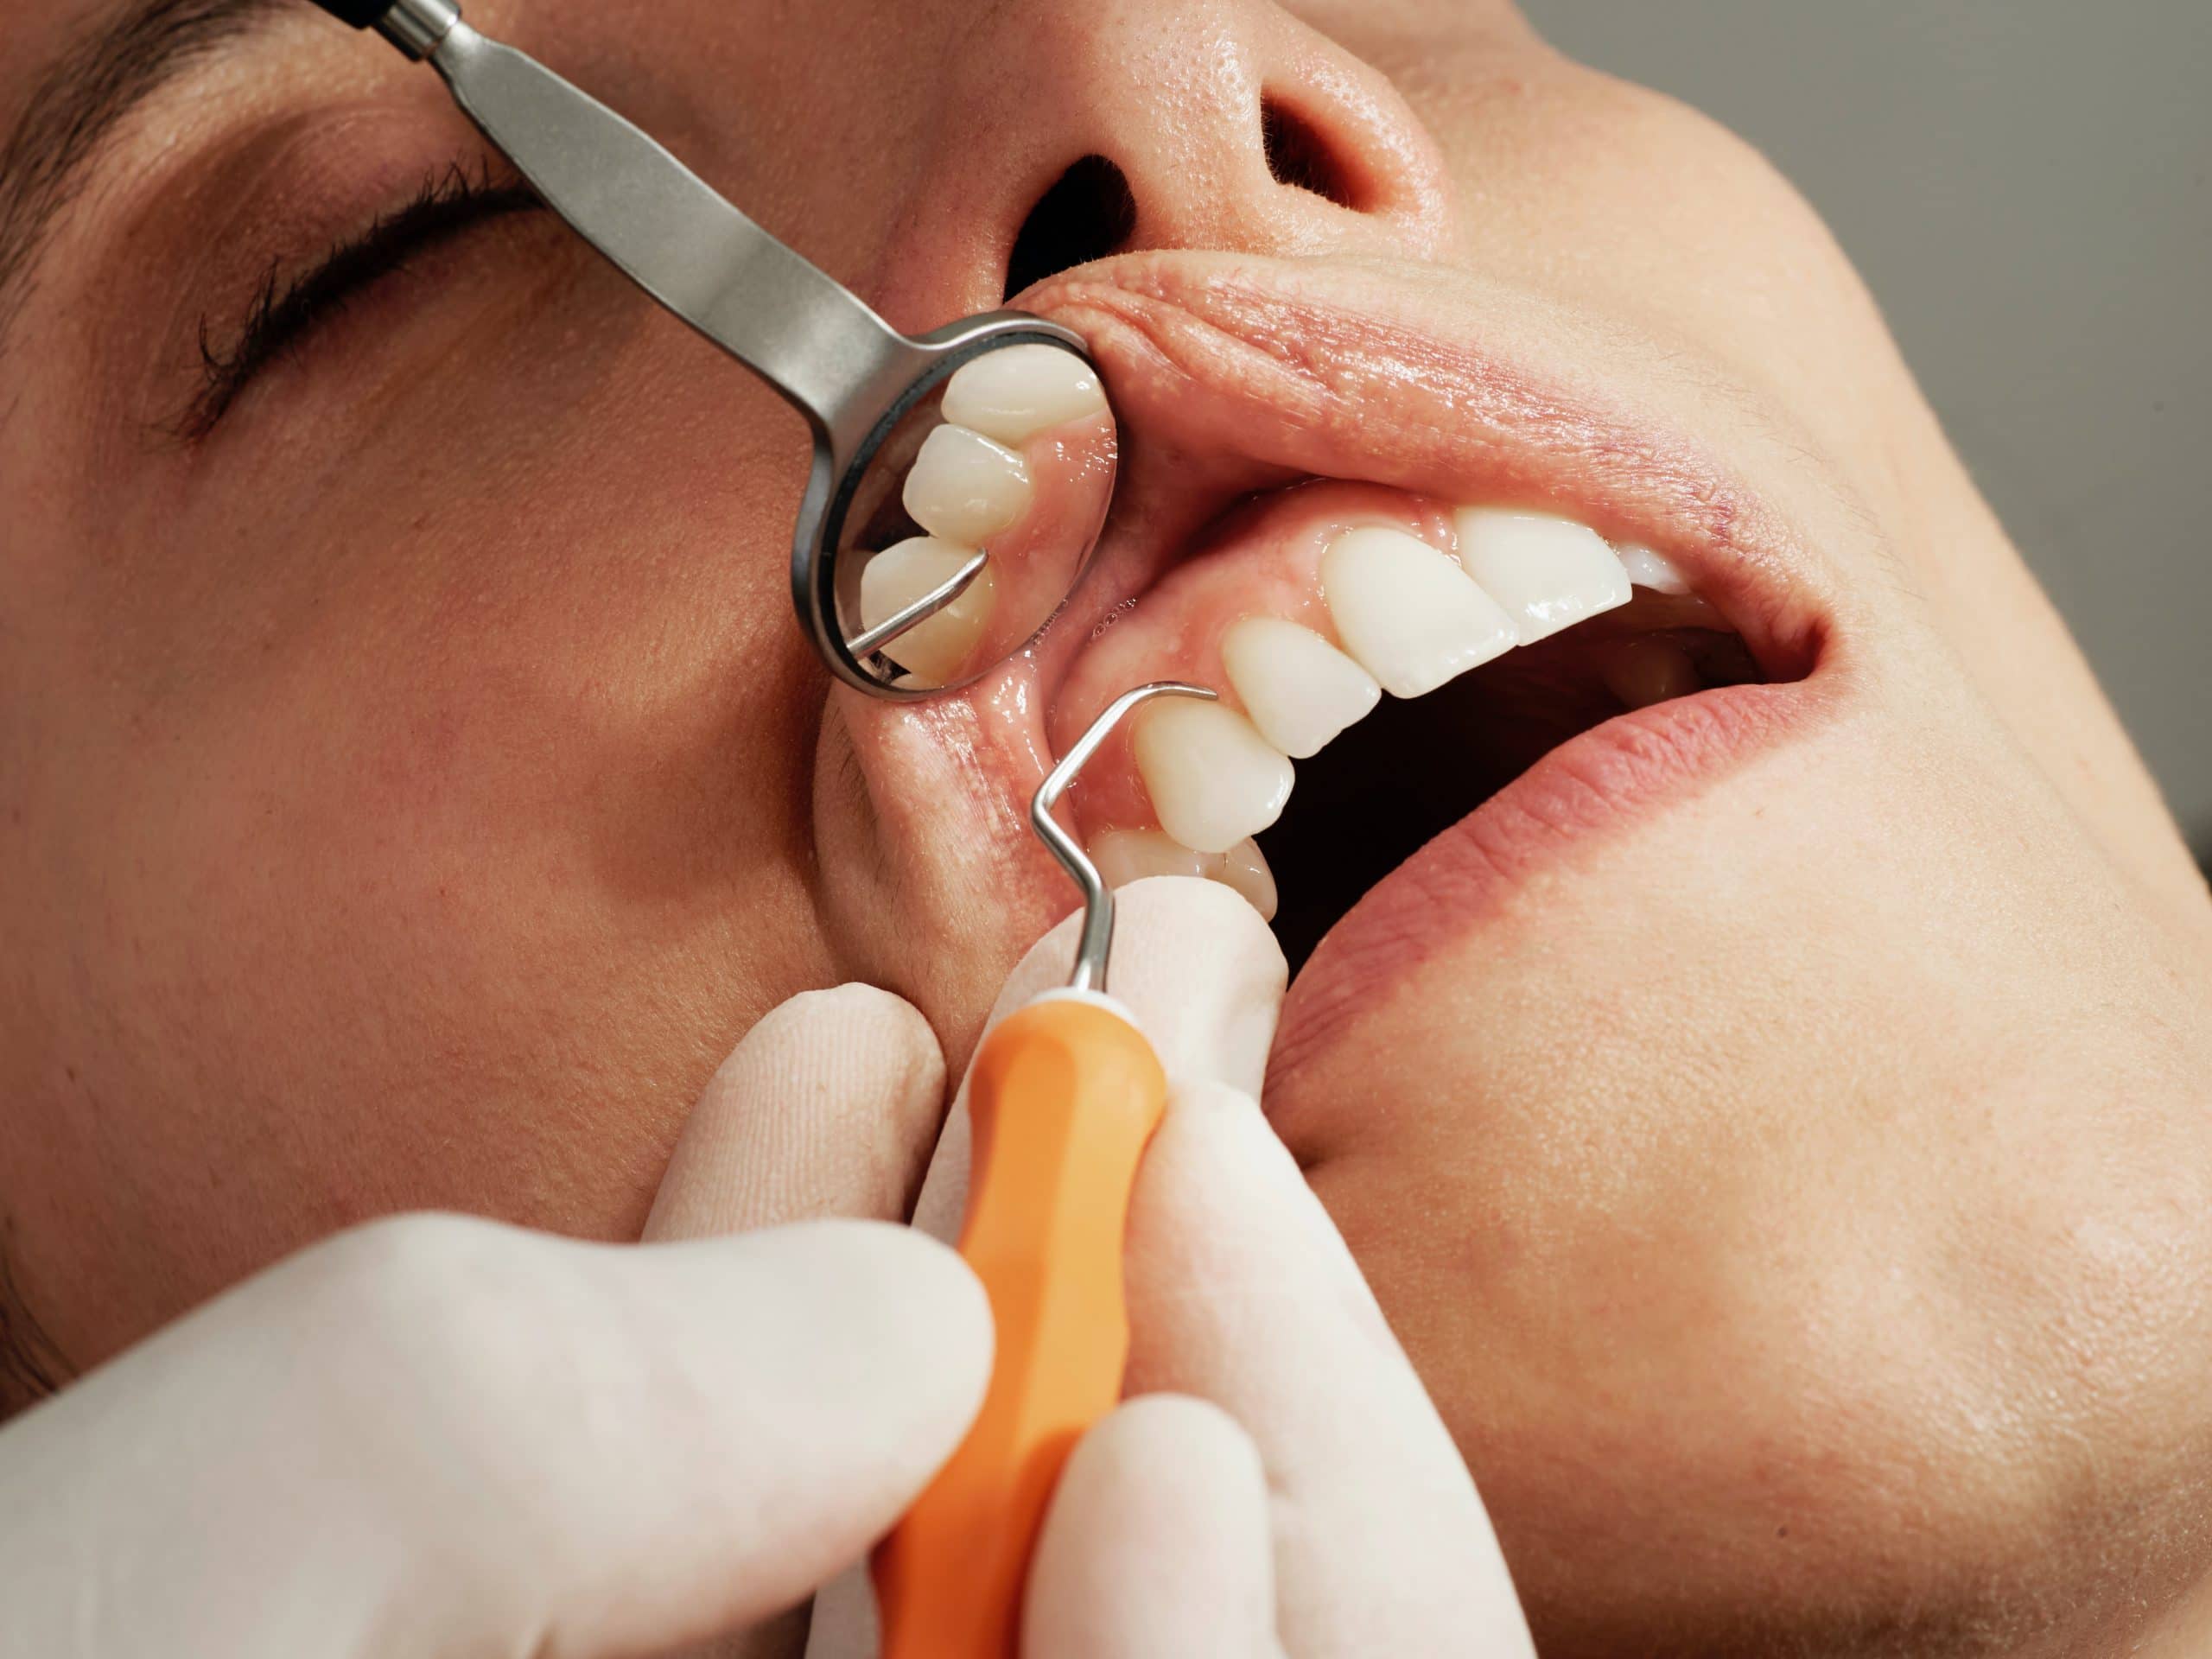 dik metaal hoed Ontstoken tandvlees behandelen, zo doe je dat! | KT3 tandartsen